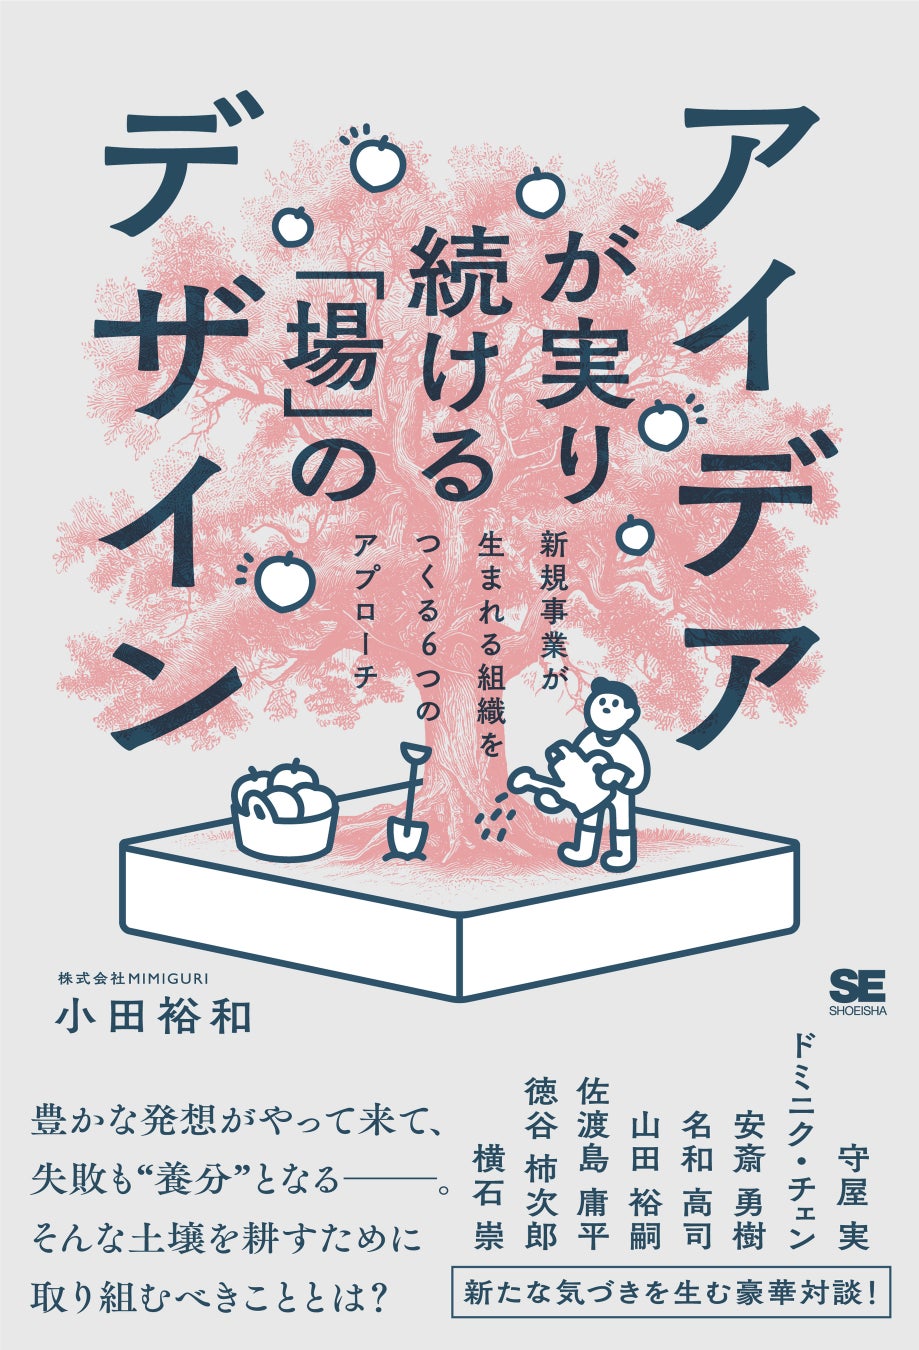 MIMIGURI 小田裕和の新著『アイデアが実り続ける「場」のデザイン』が本日4月8日(月)からAmazonにて先行予約...